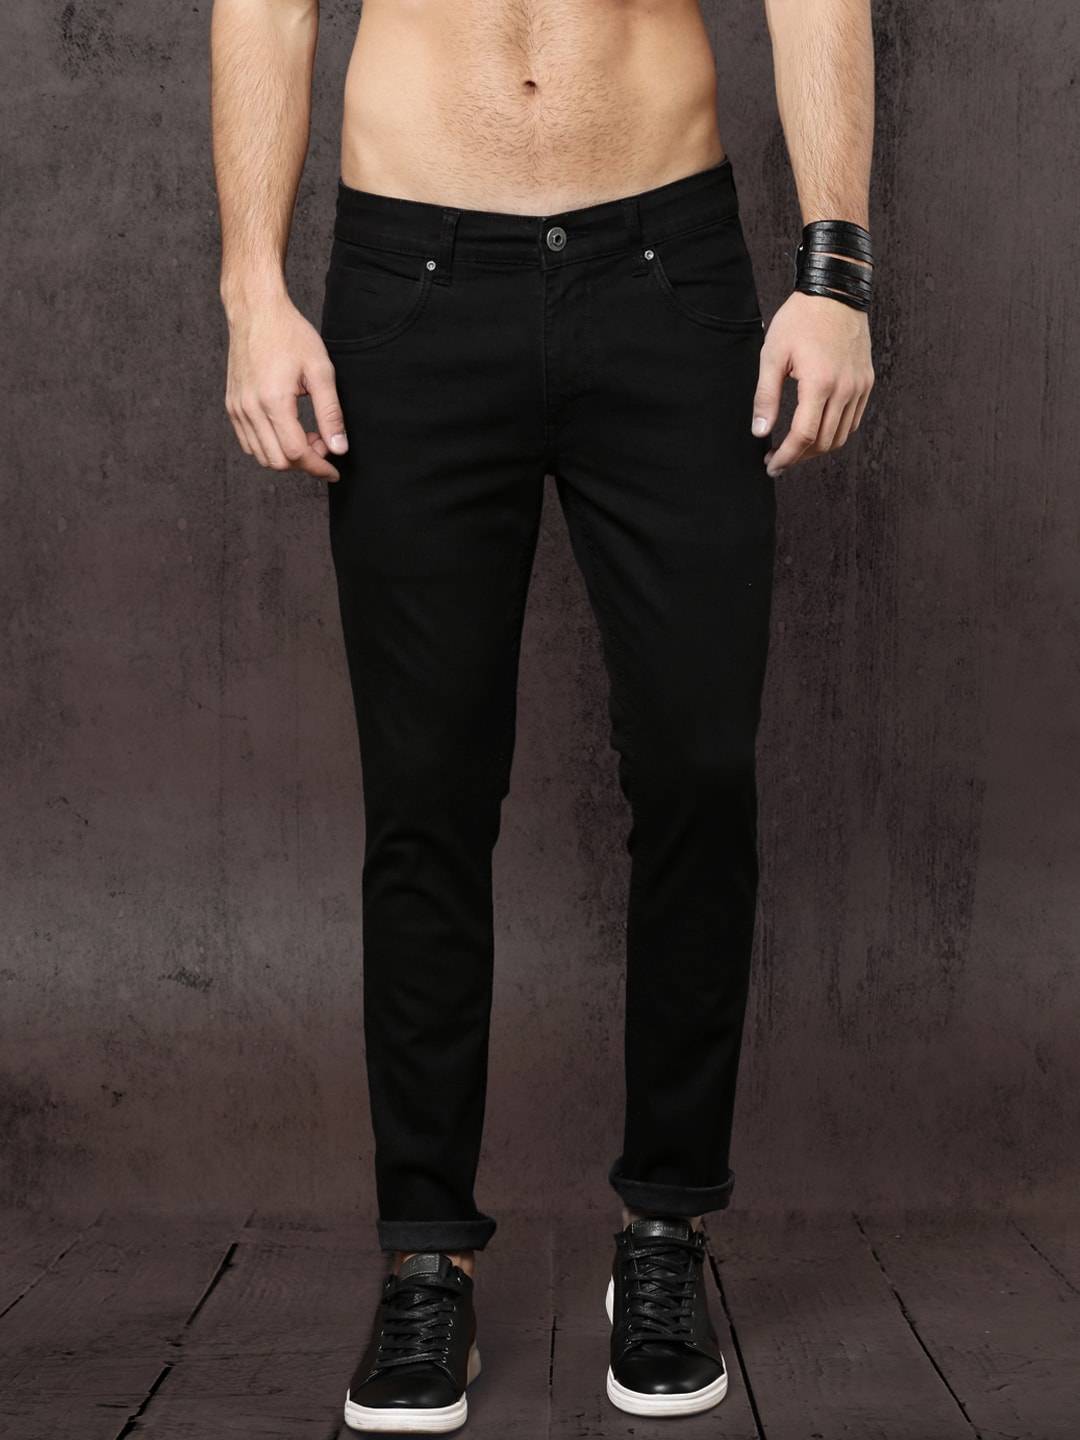 Как и с чем носить черные джинсы – 6 идей для мужчин